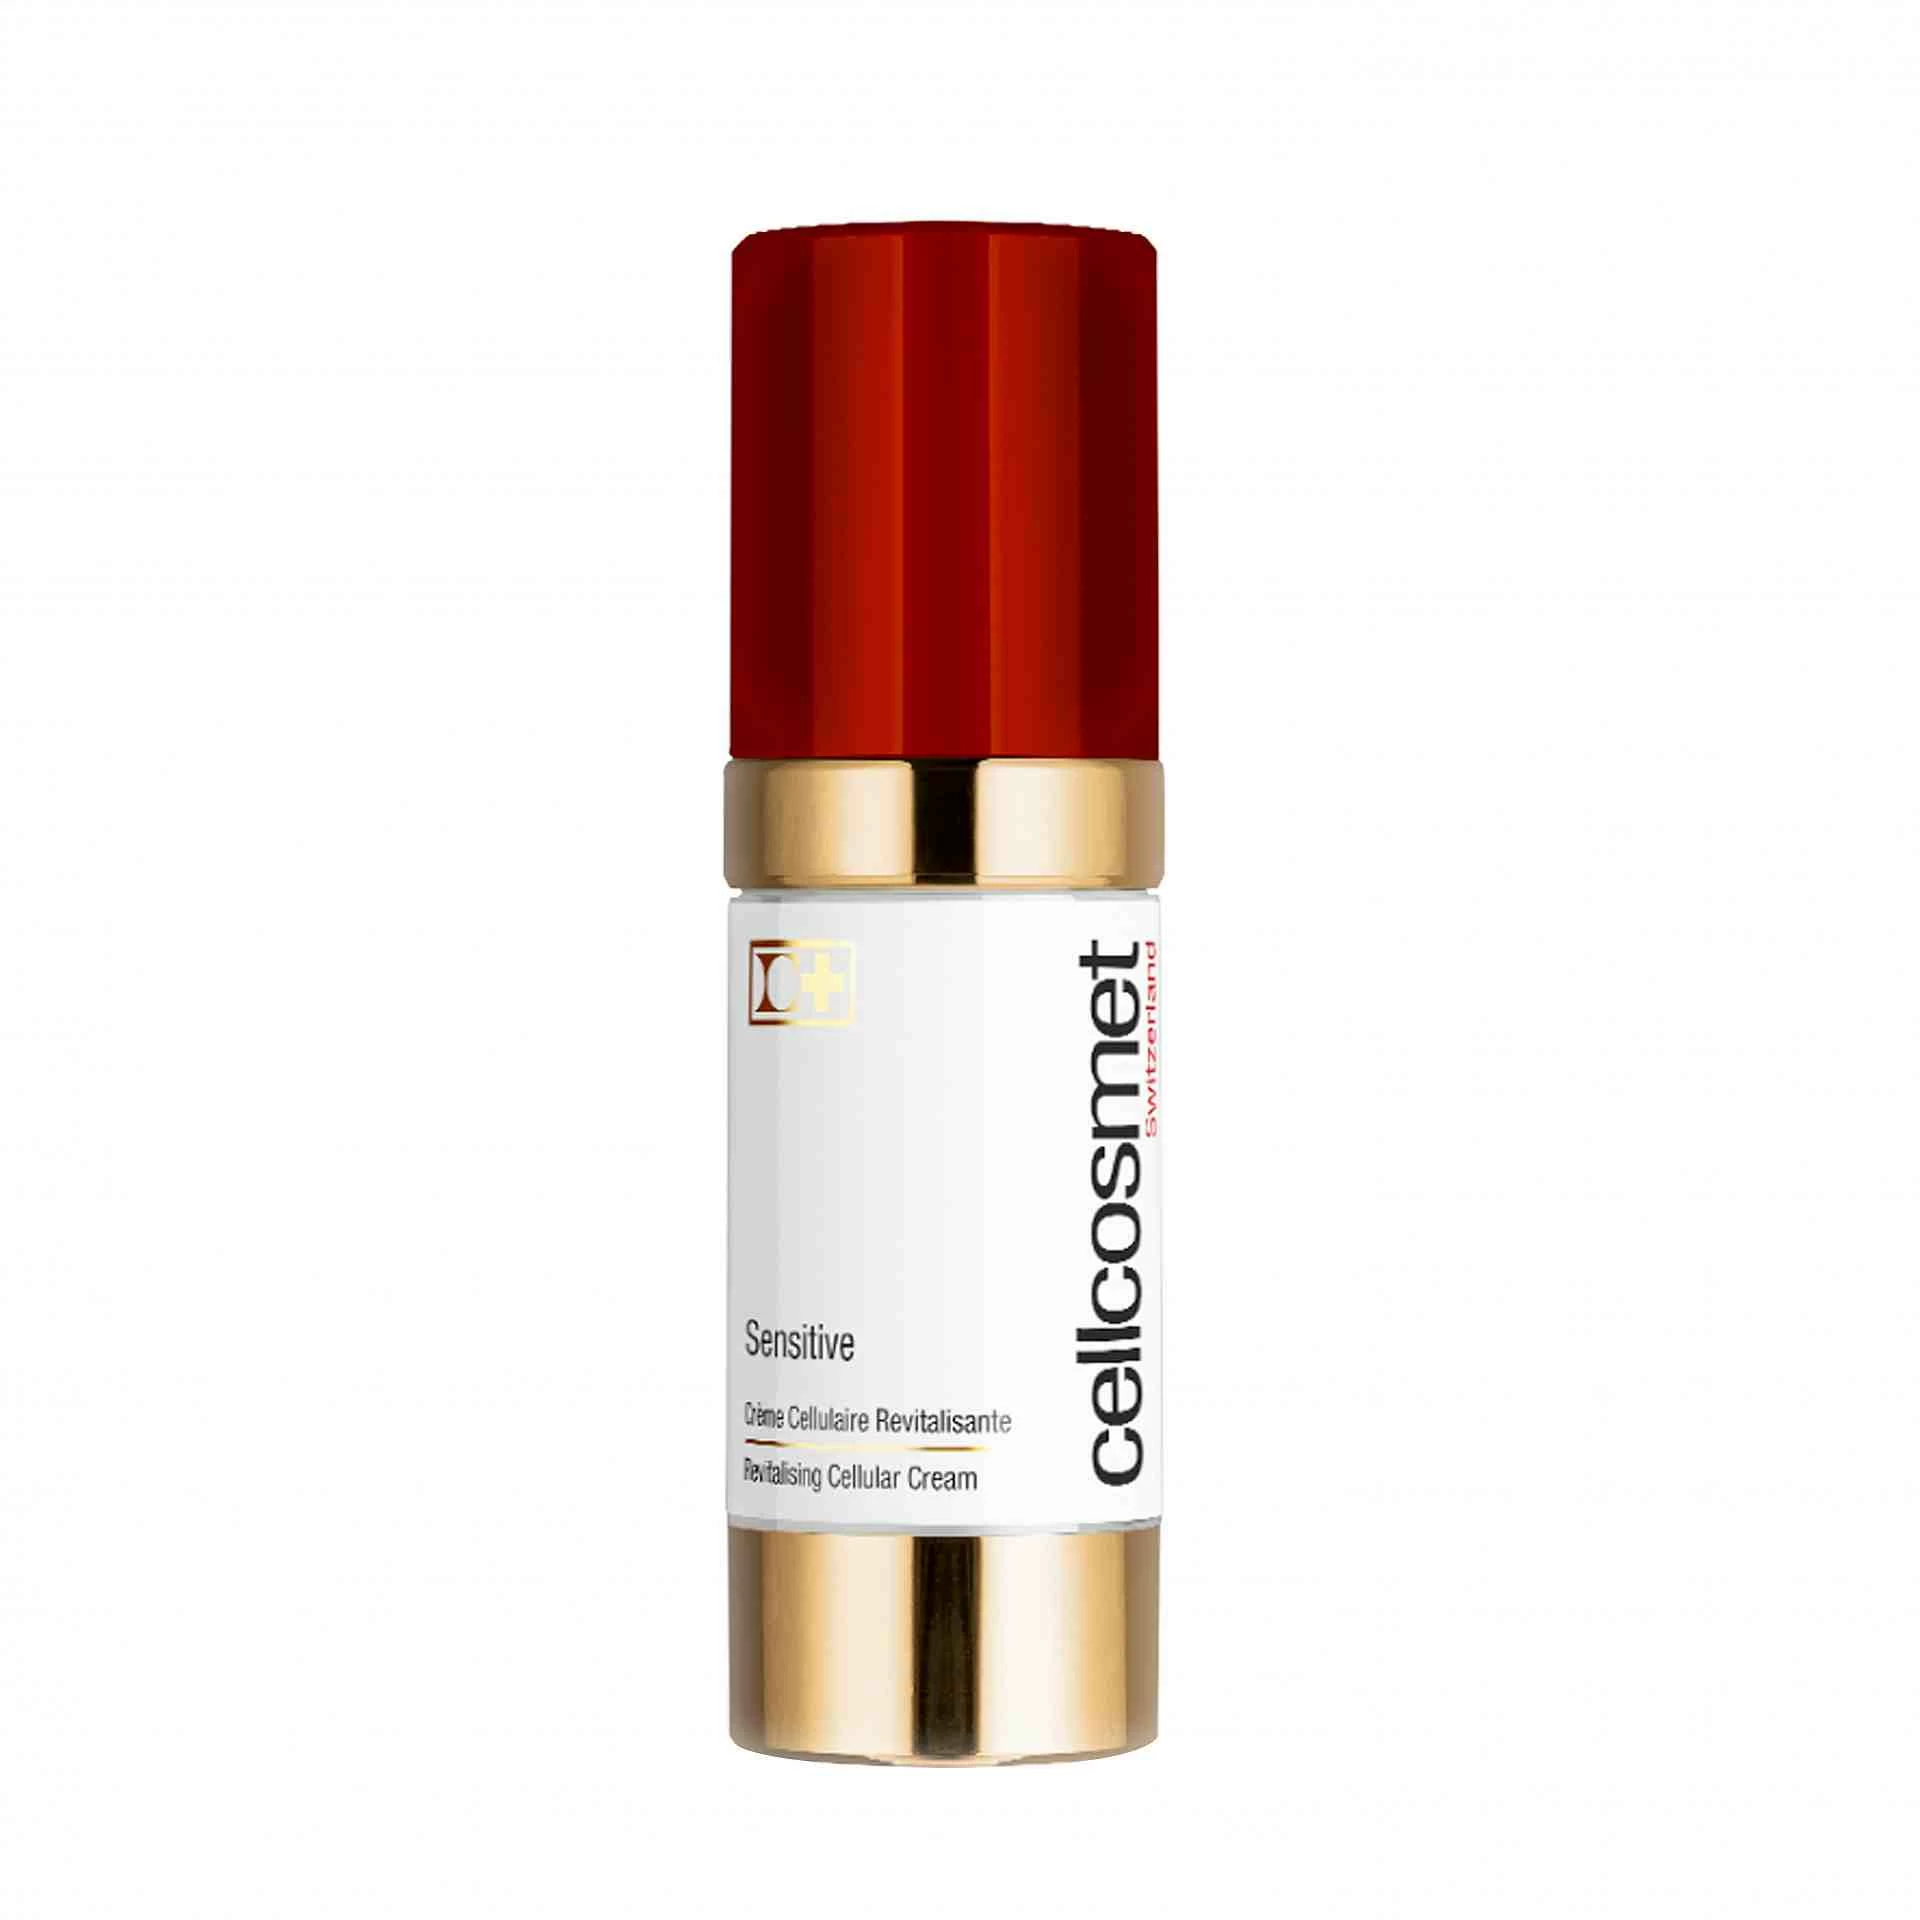 Sensitive 30ml | Crema revitalizante antiedad - Cellcosmet ®